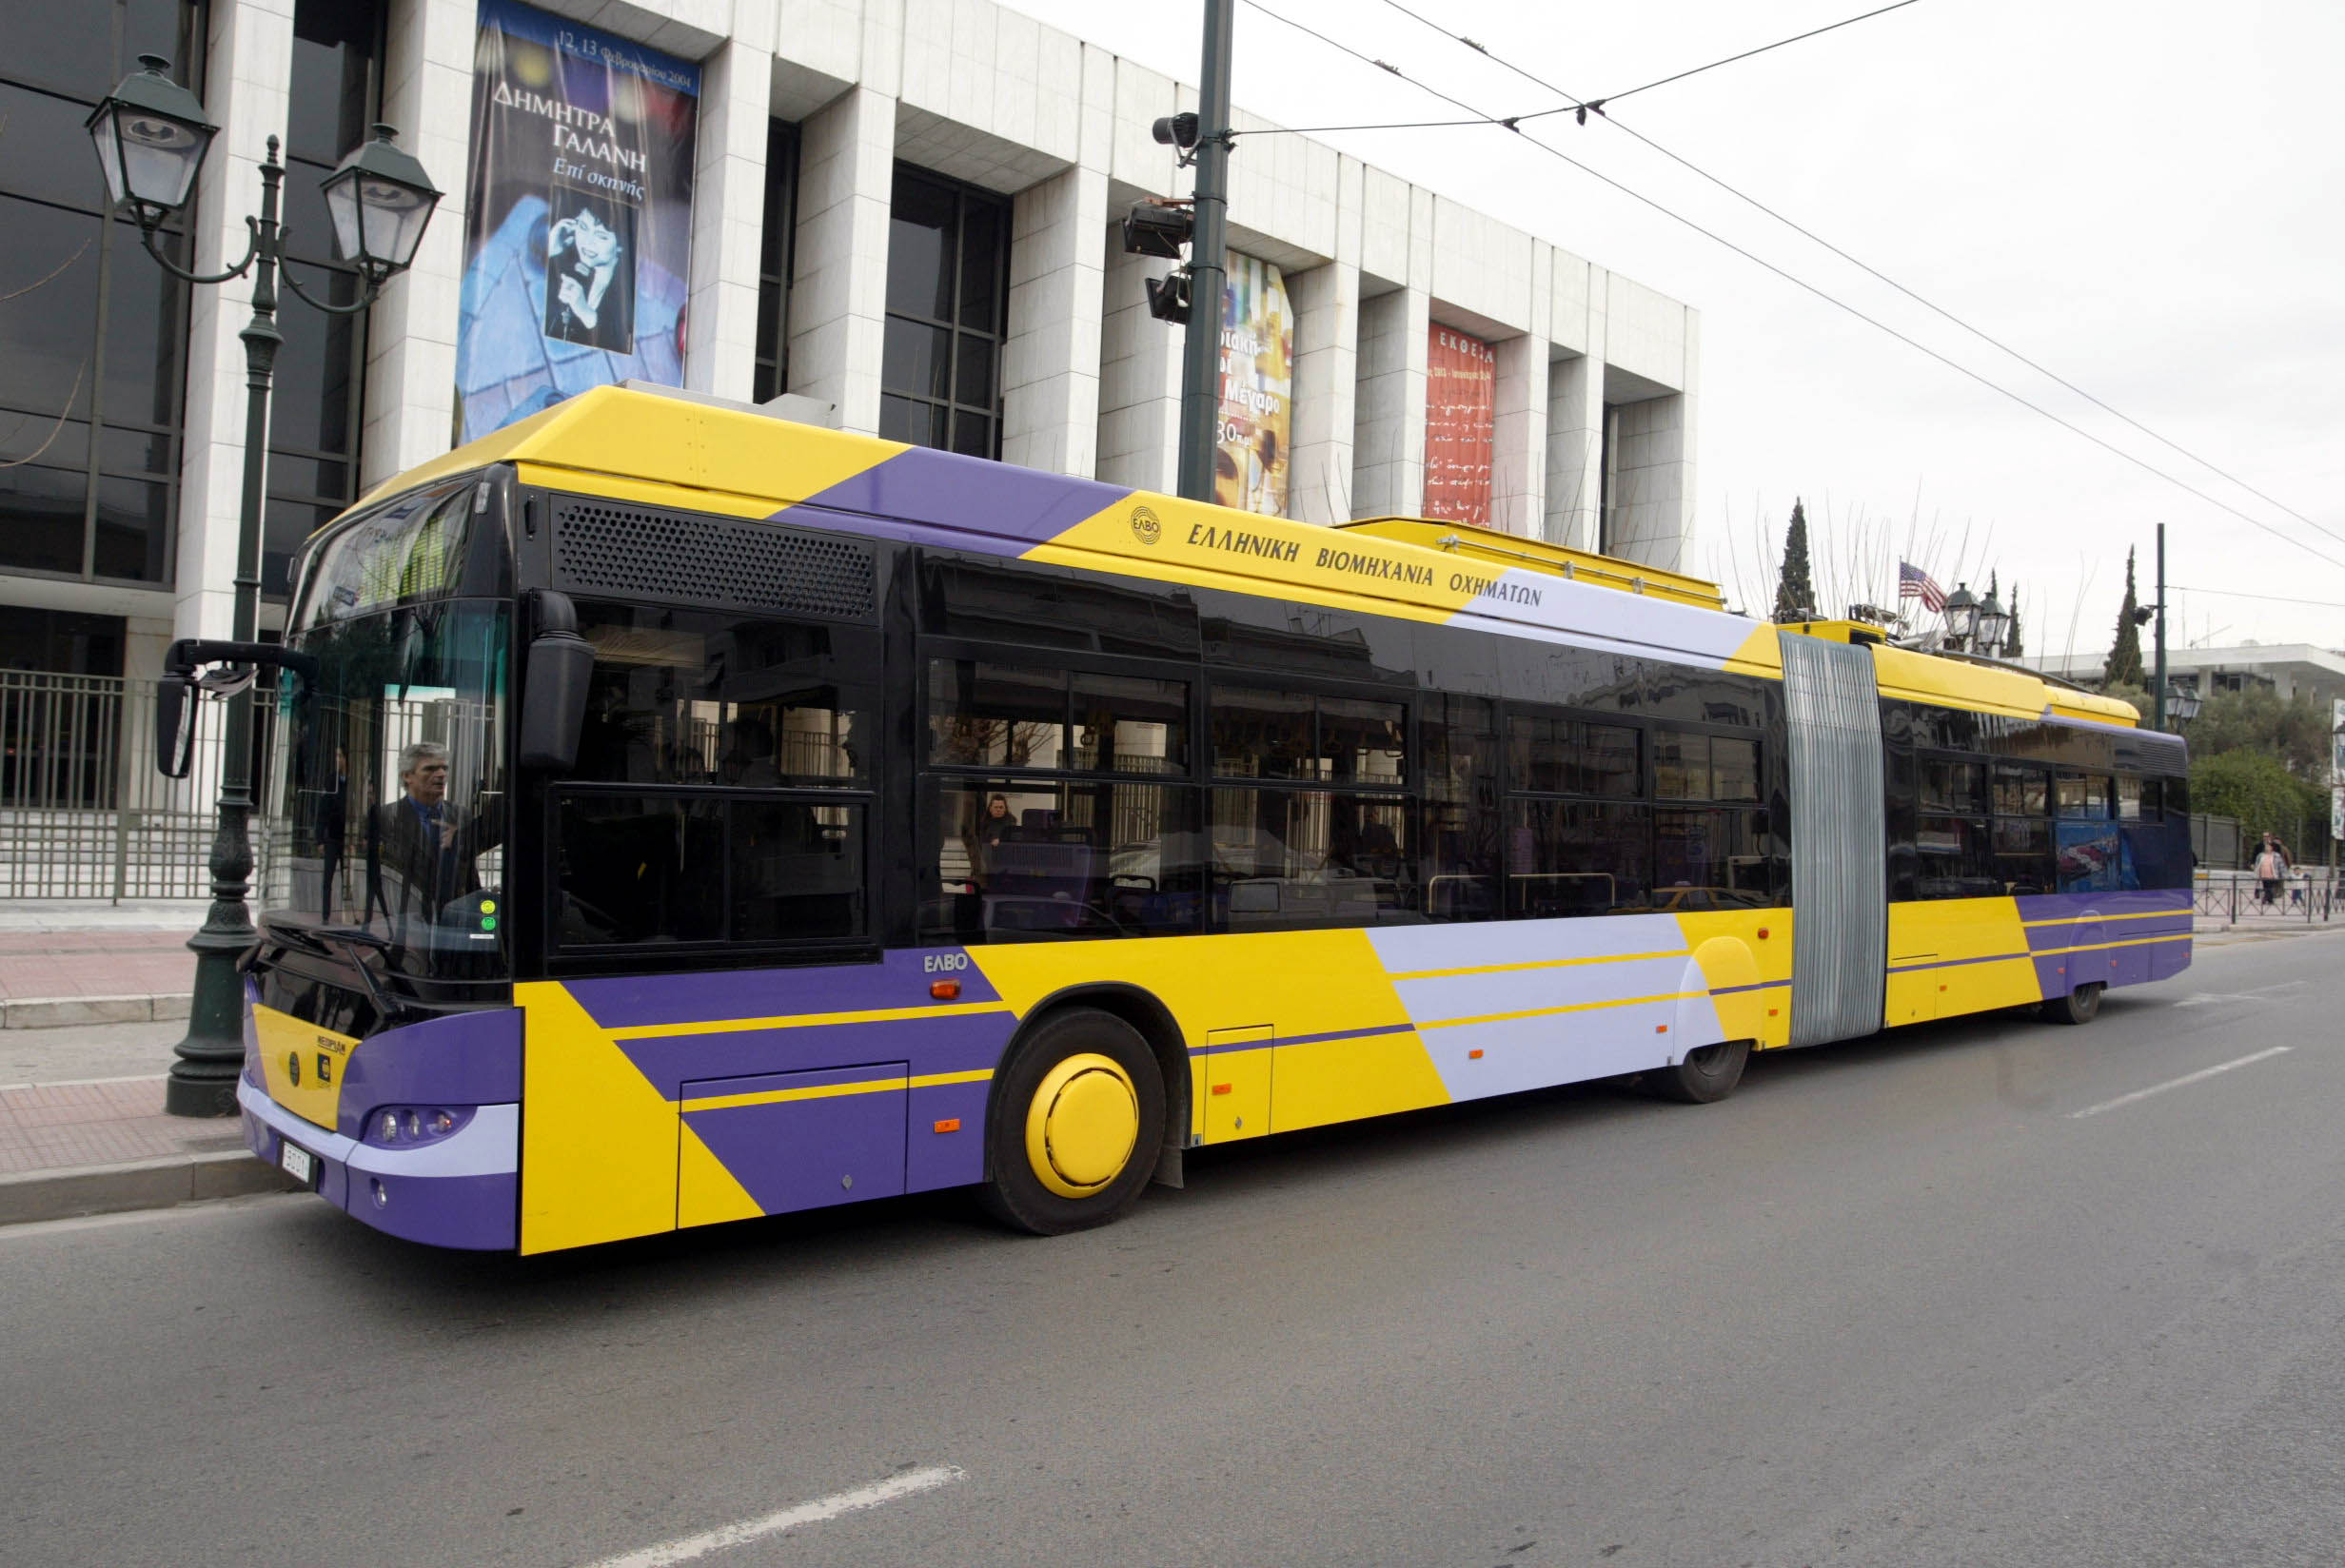 Δωρεάν wi-fi σε τρόλεϊ και αστικά λεωφορεία